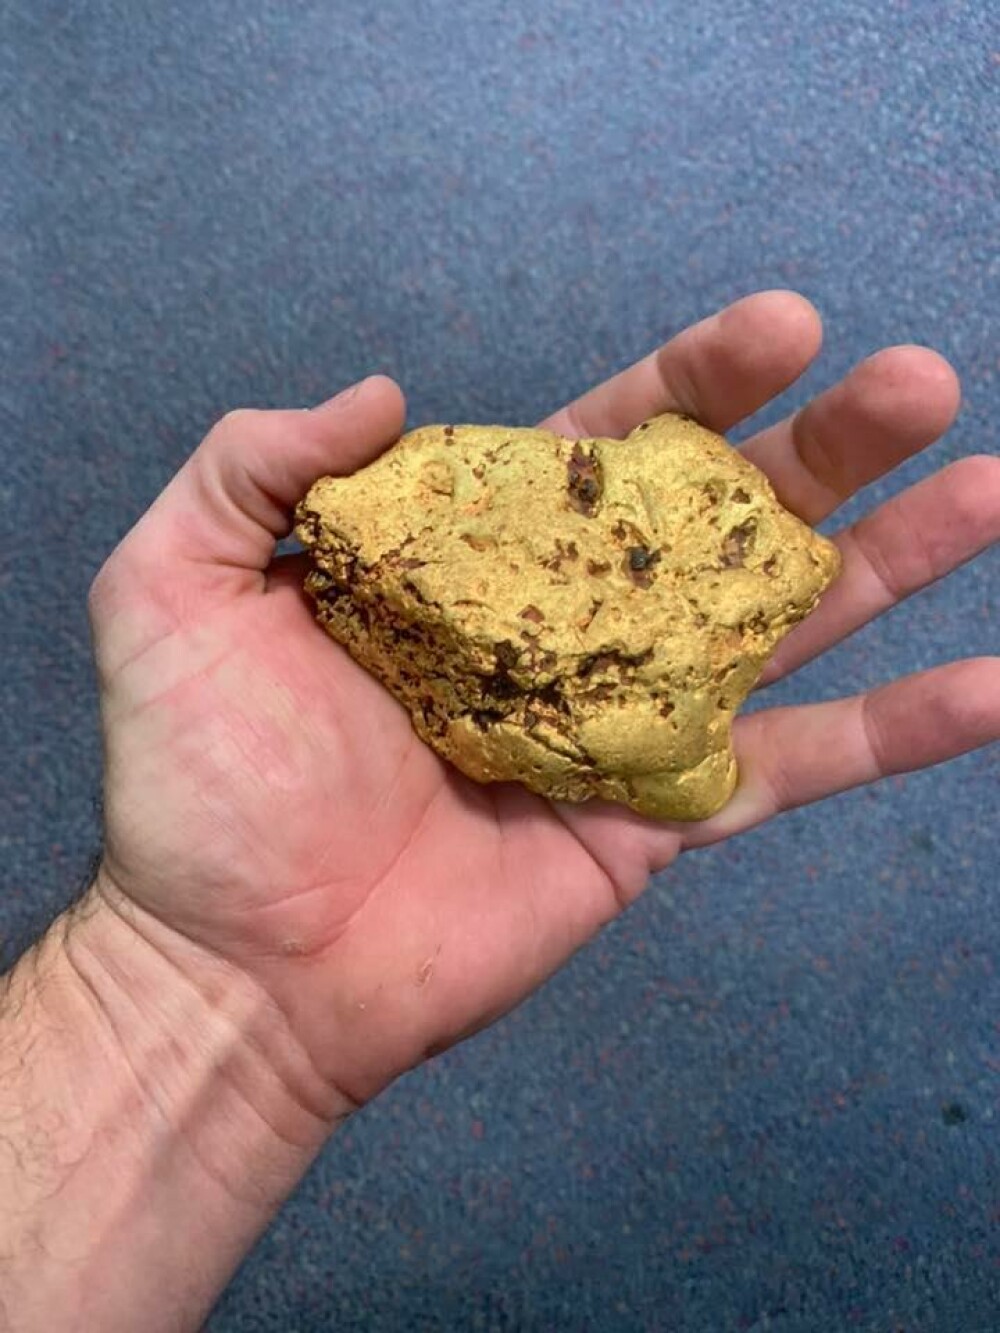 A găsit o pepită de aur, de 1,4 kilograme, estimată la 100.000 de dolari - Imaginea 1